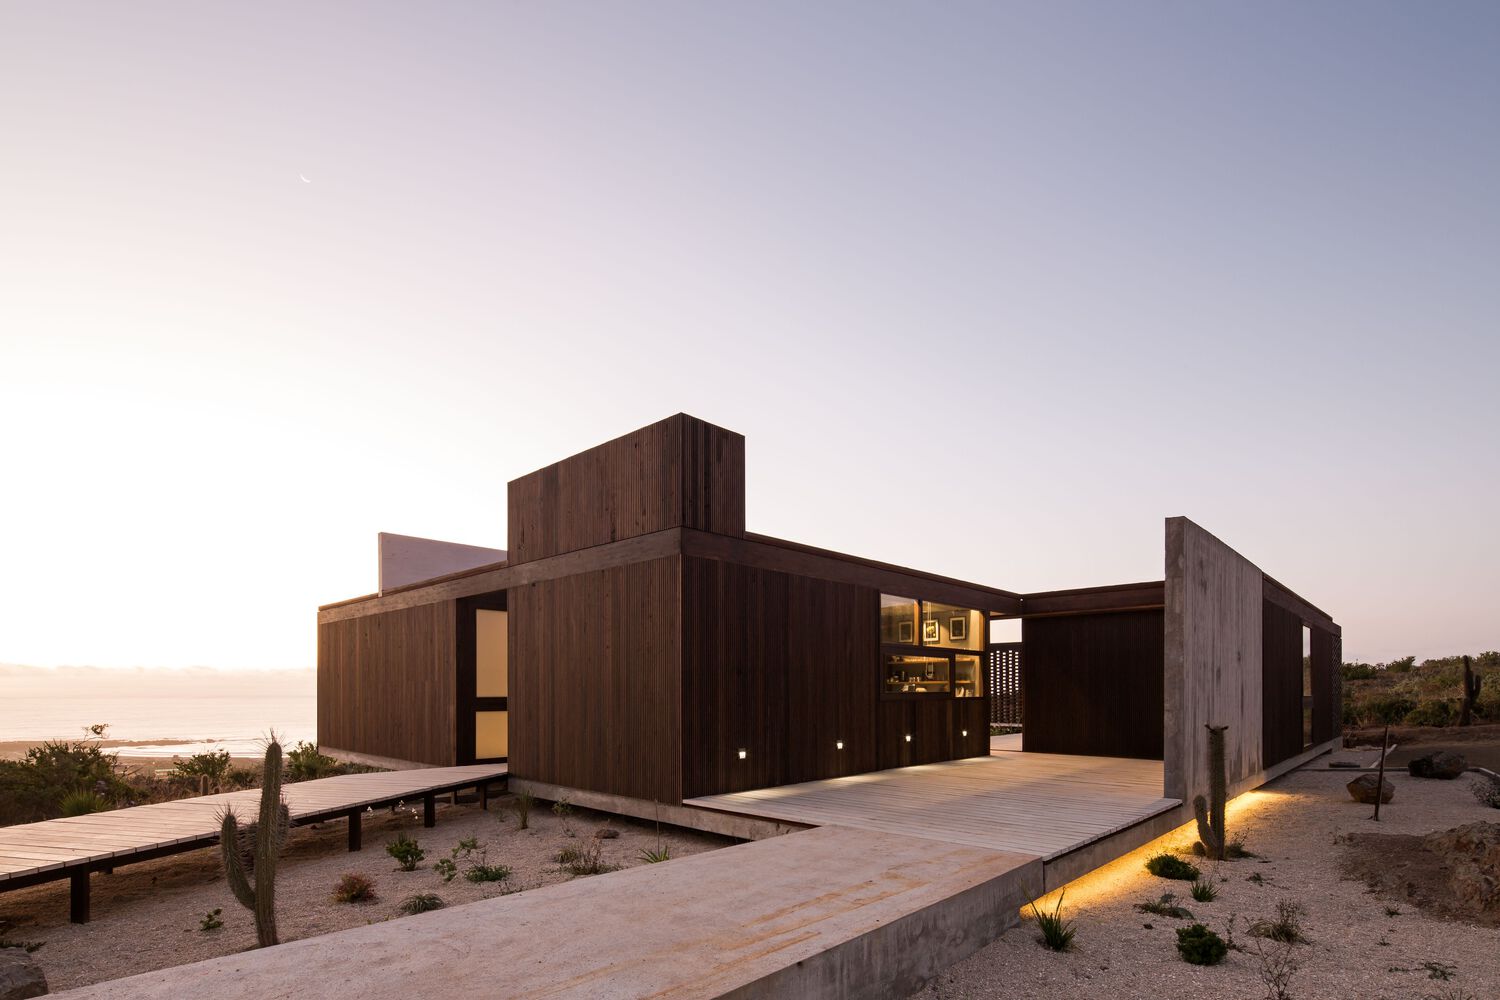 别墅设计,别墅设计案例,Juan Pablo Ureta Arquitectos,180㎡,极简风格别墅,别墅庭院设计,智利,国外别墅设计案例